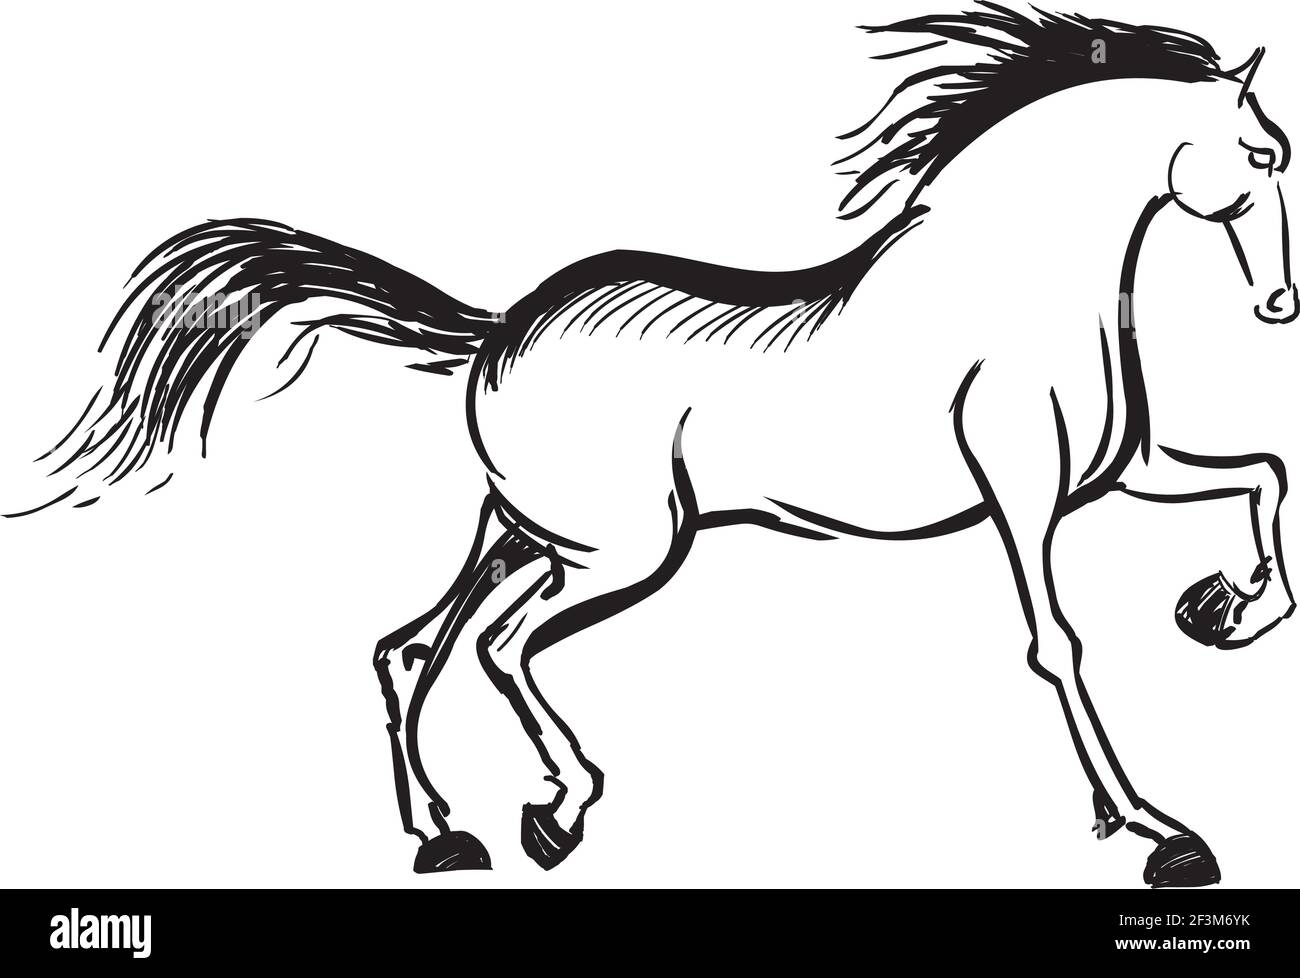 Running horse illustration Stock Vector